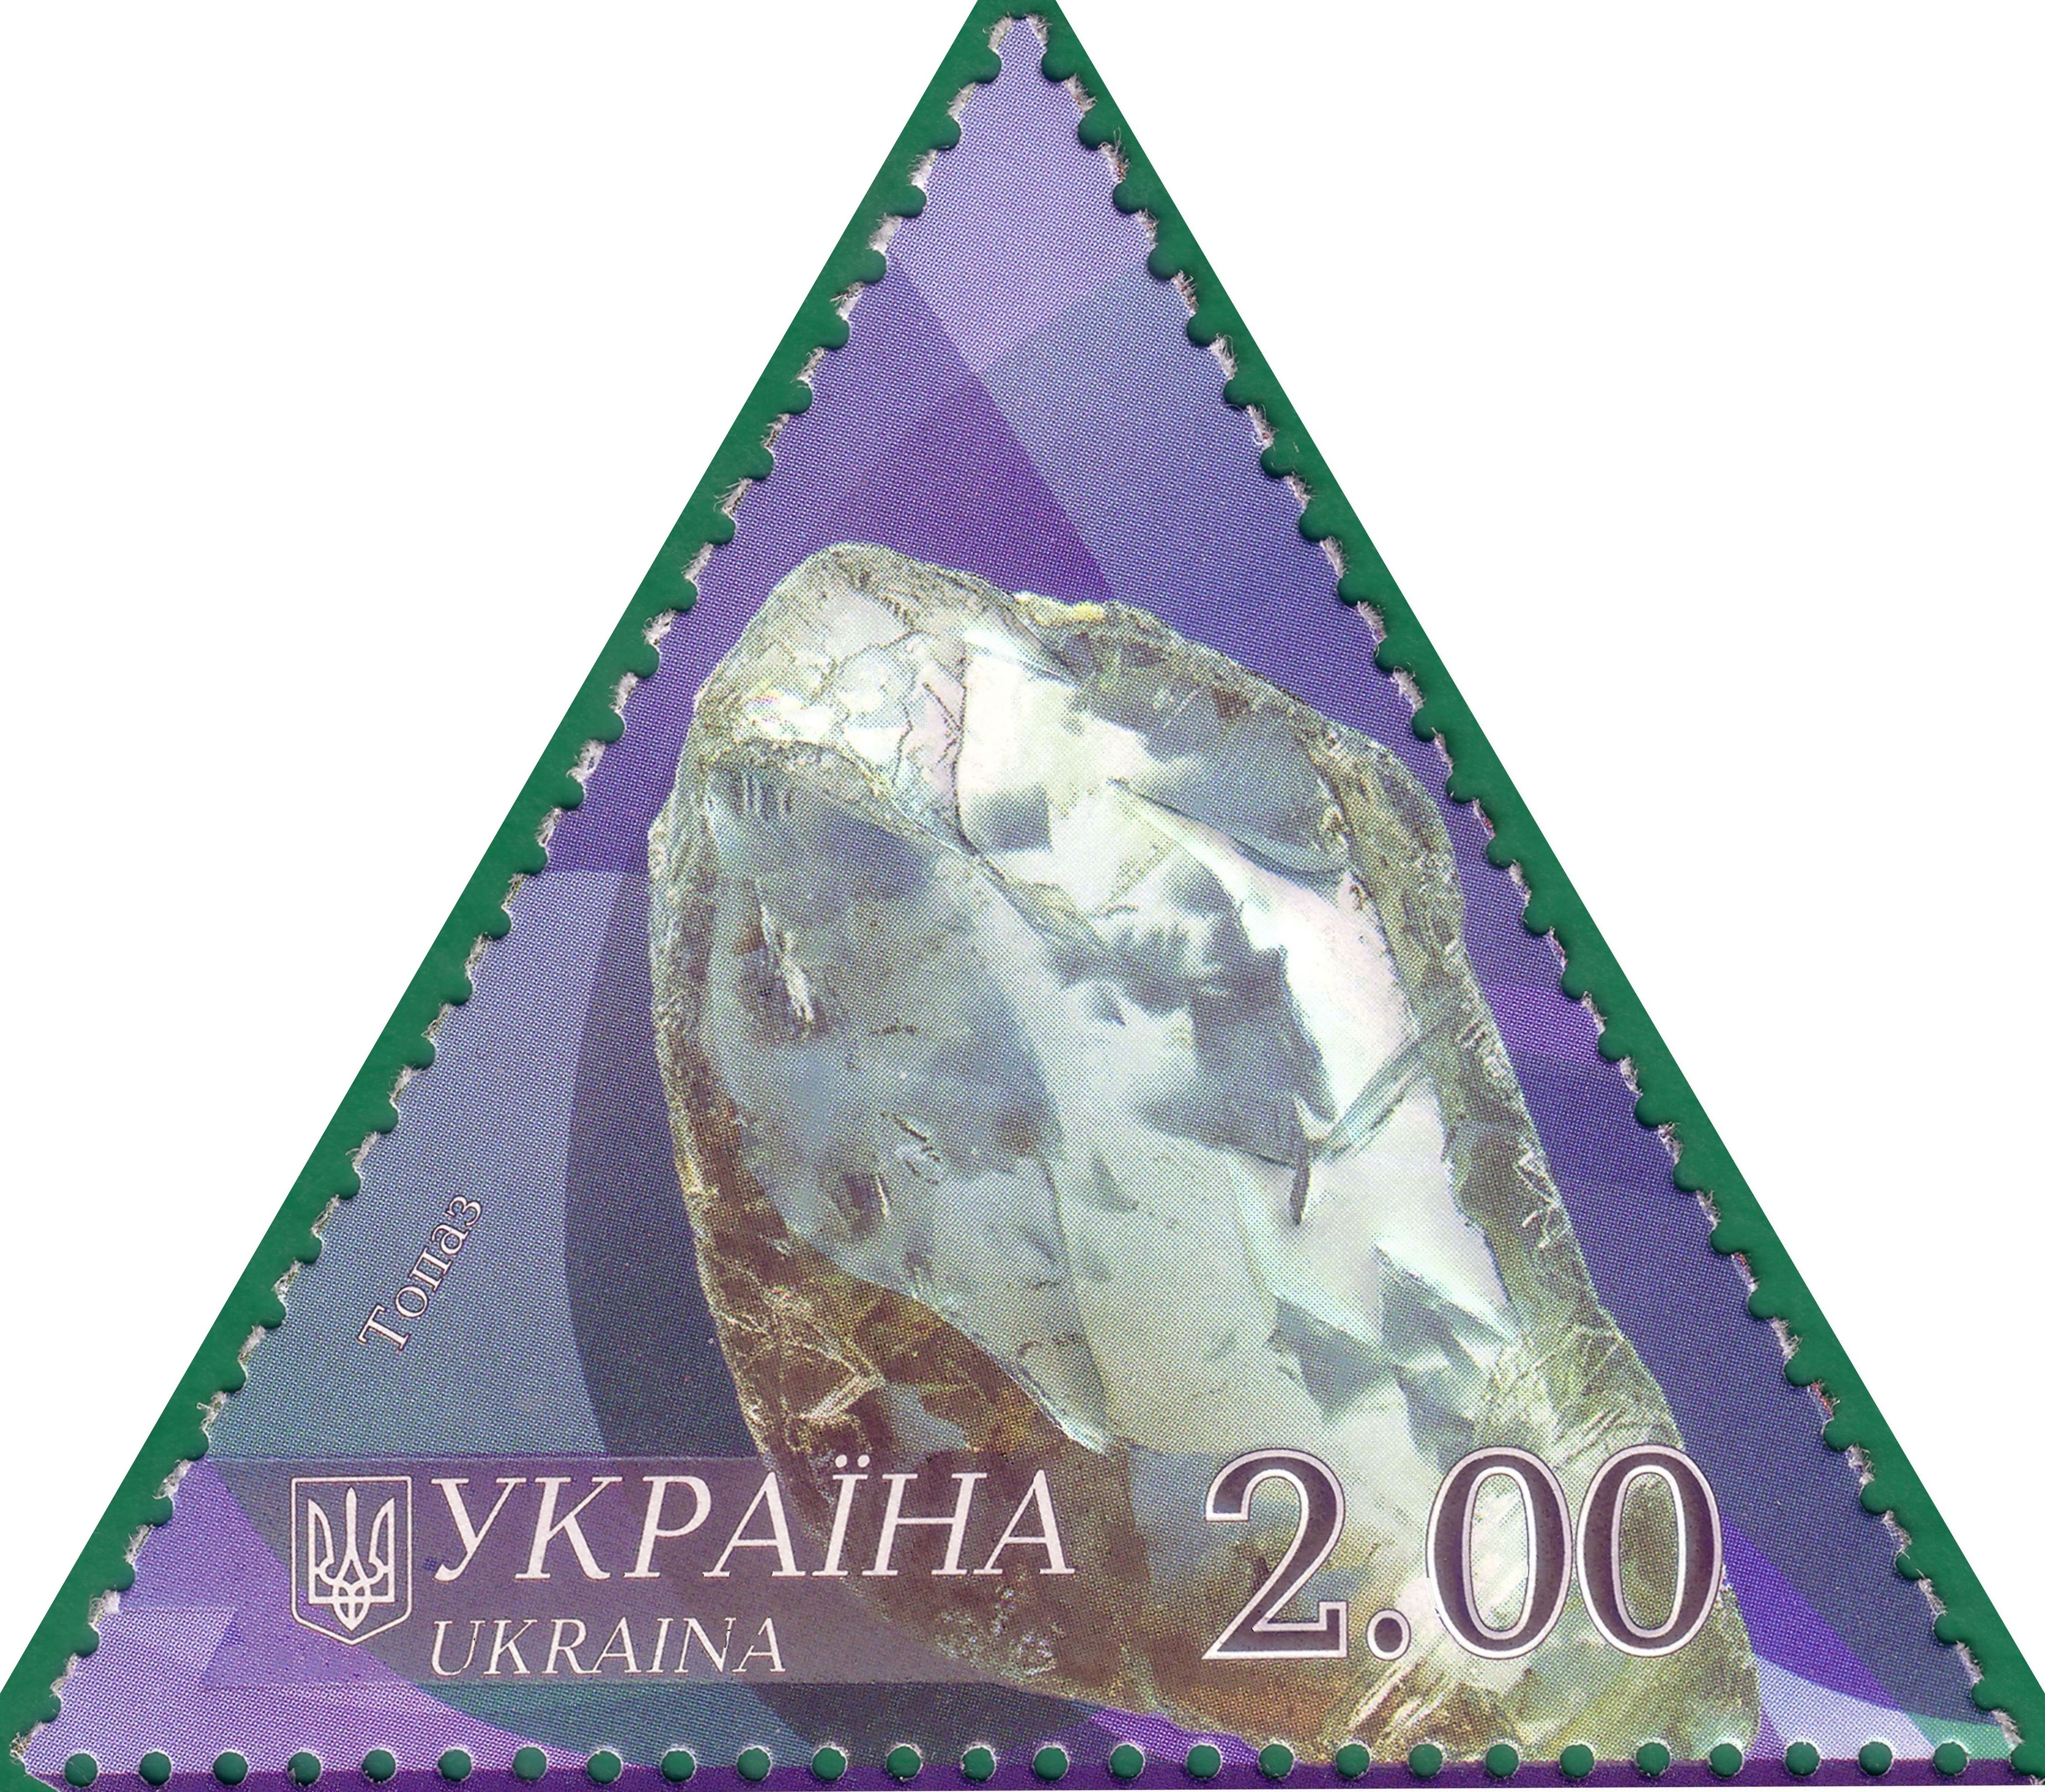 2009 Топаз сер.Минералы Украины